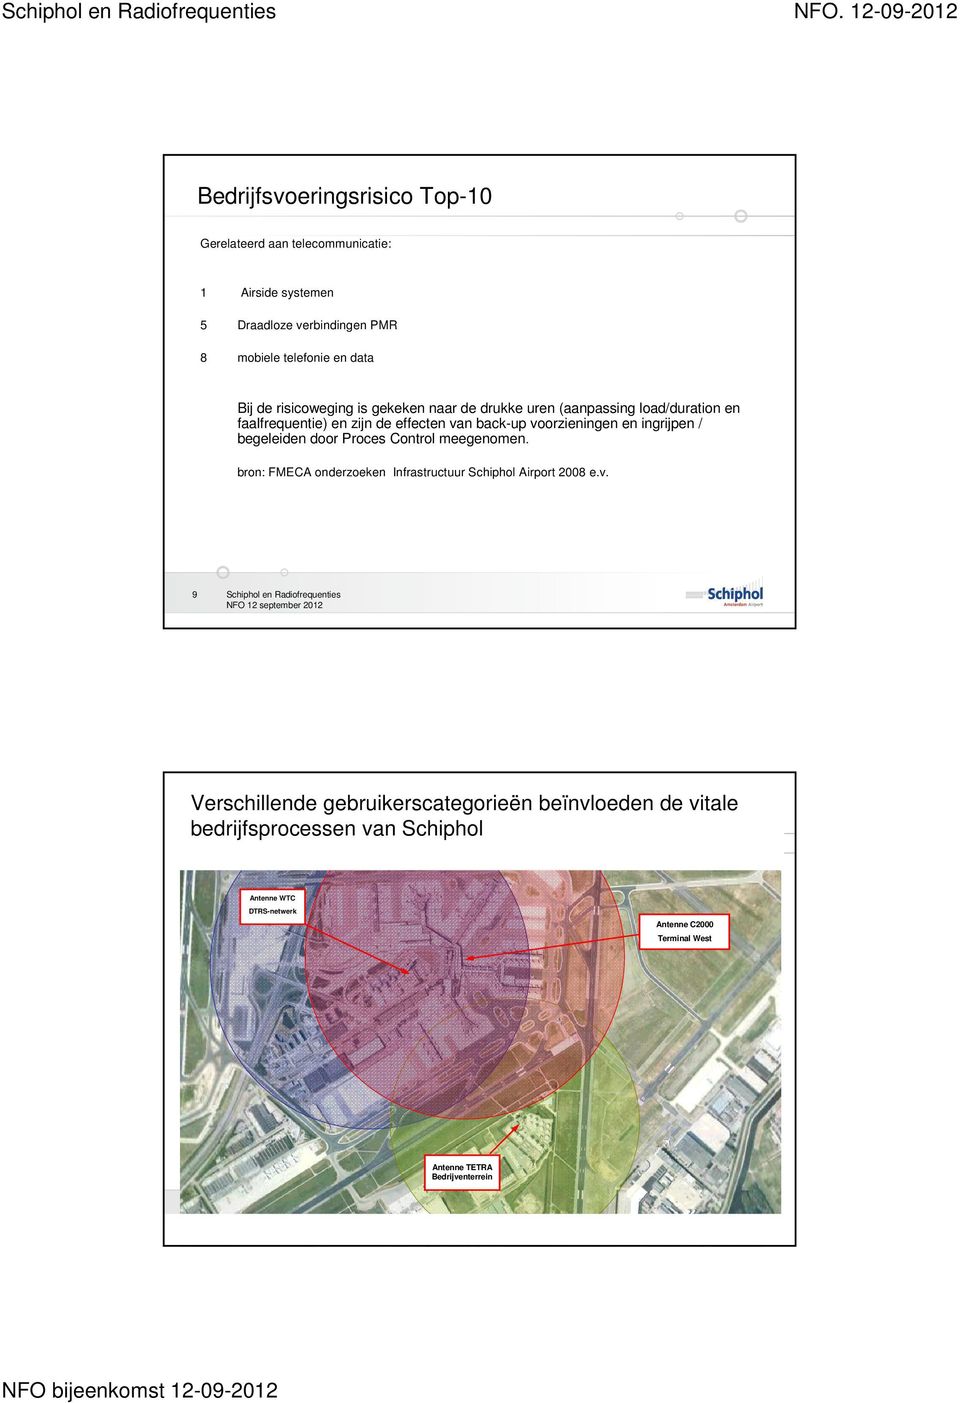 ingrijp / begeleid door Proces Control meegom. bron: FMECA onderzoek Infrastructuur Schiphol Airport 2008 e.v.